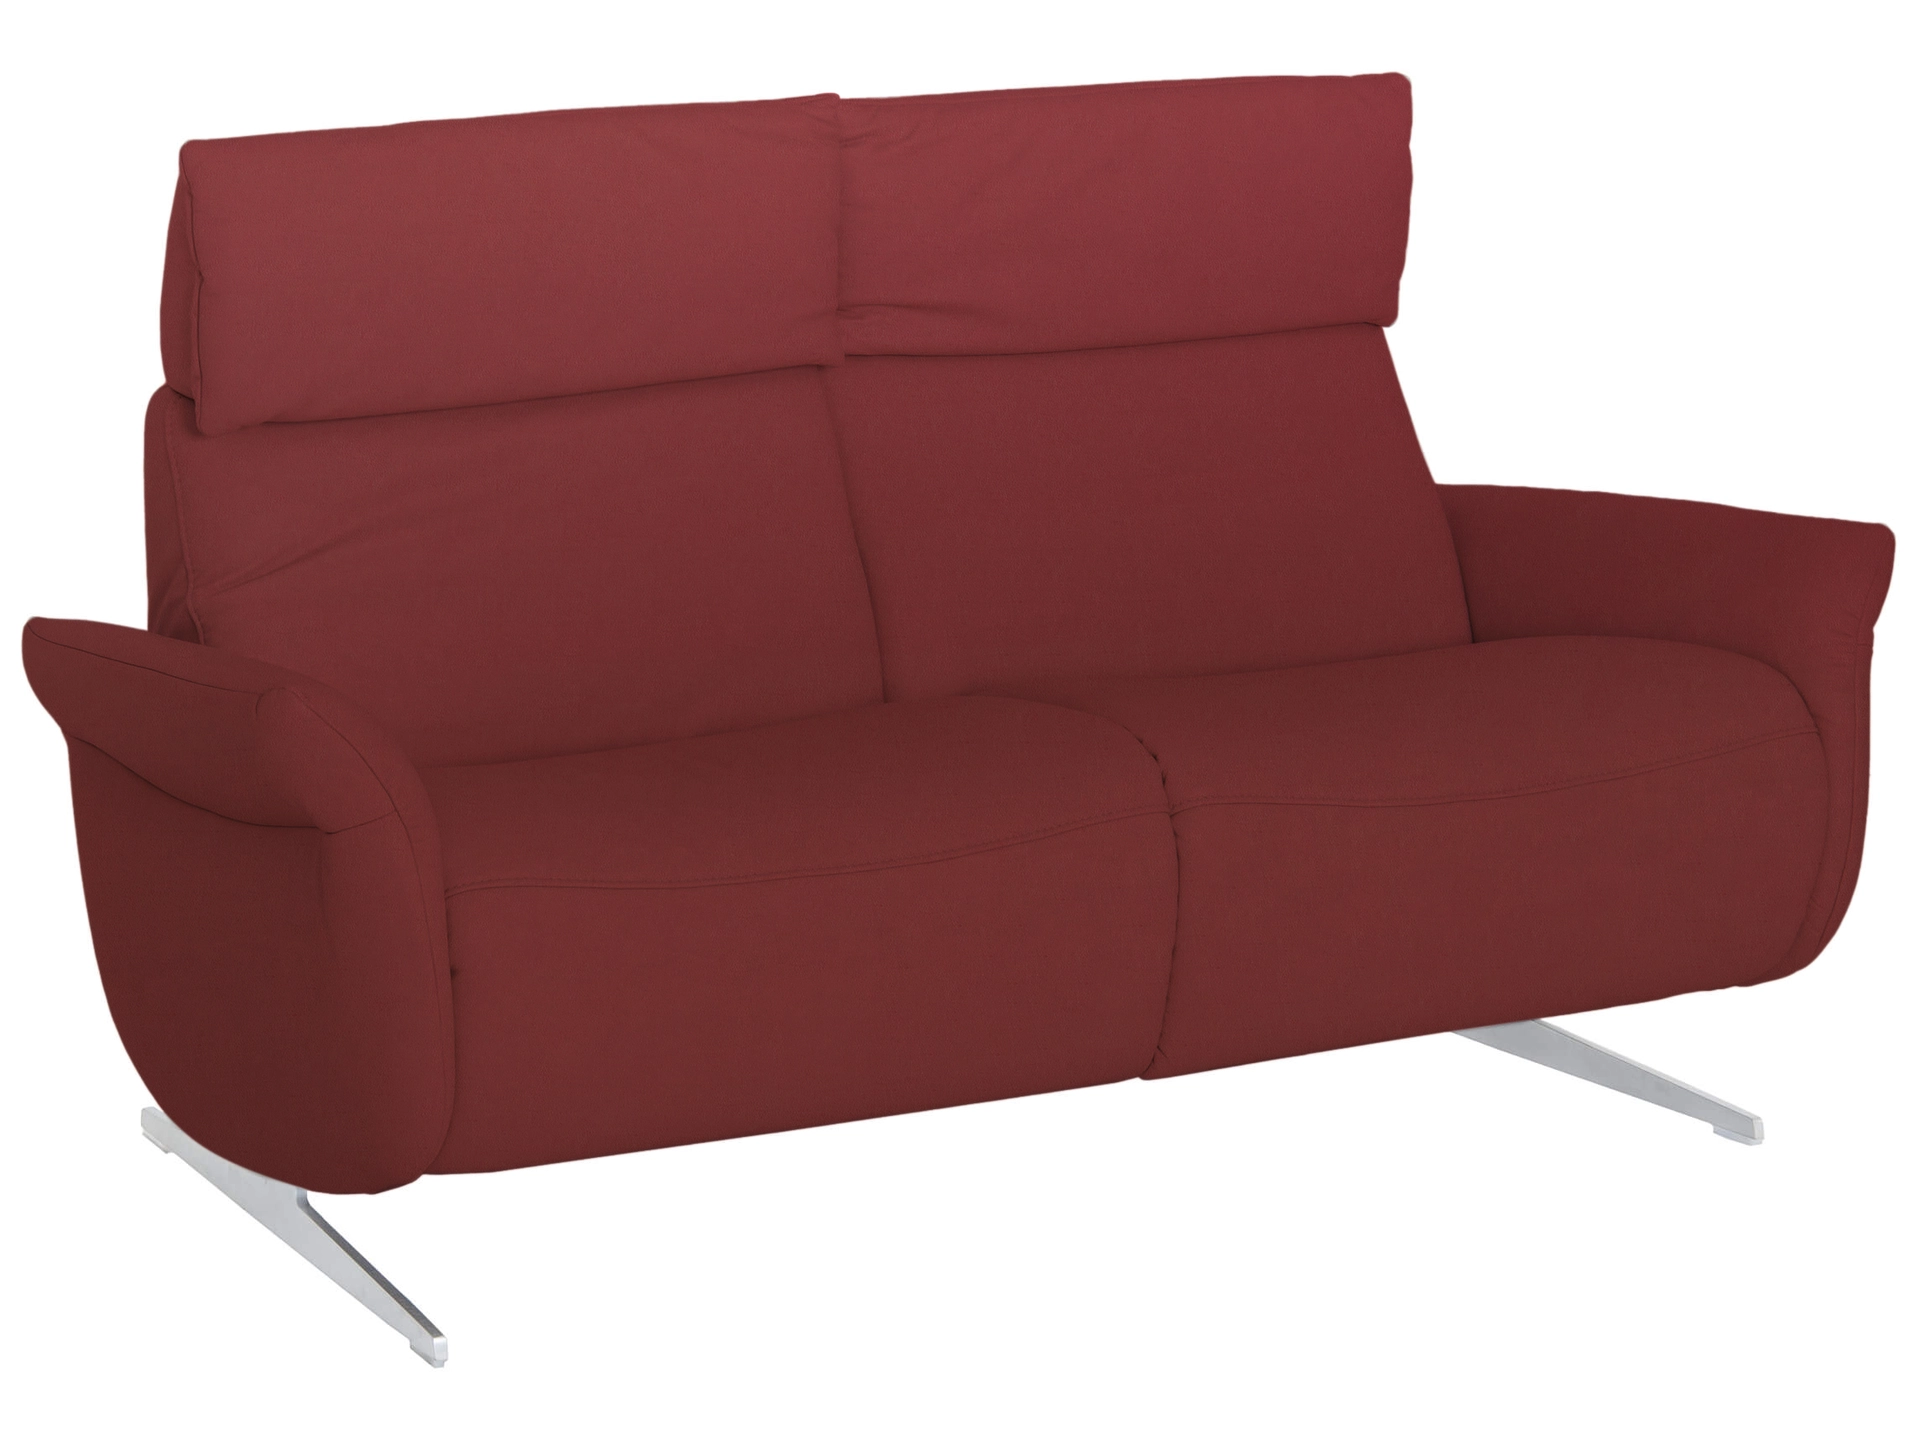 Sofa Chester Basic B: 169 cm Himolla / Farbe: Merlot / Material: Leder Basic